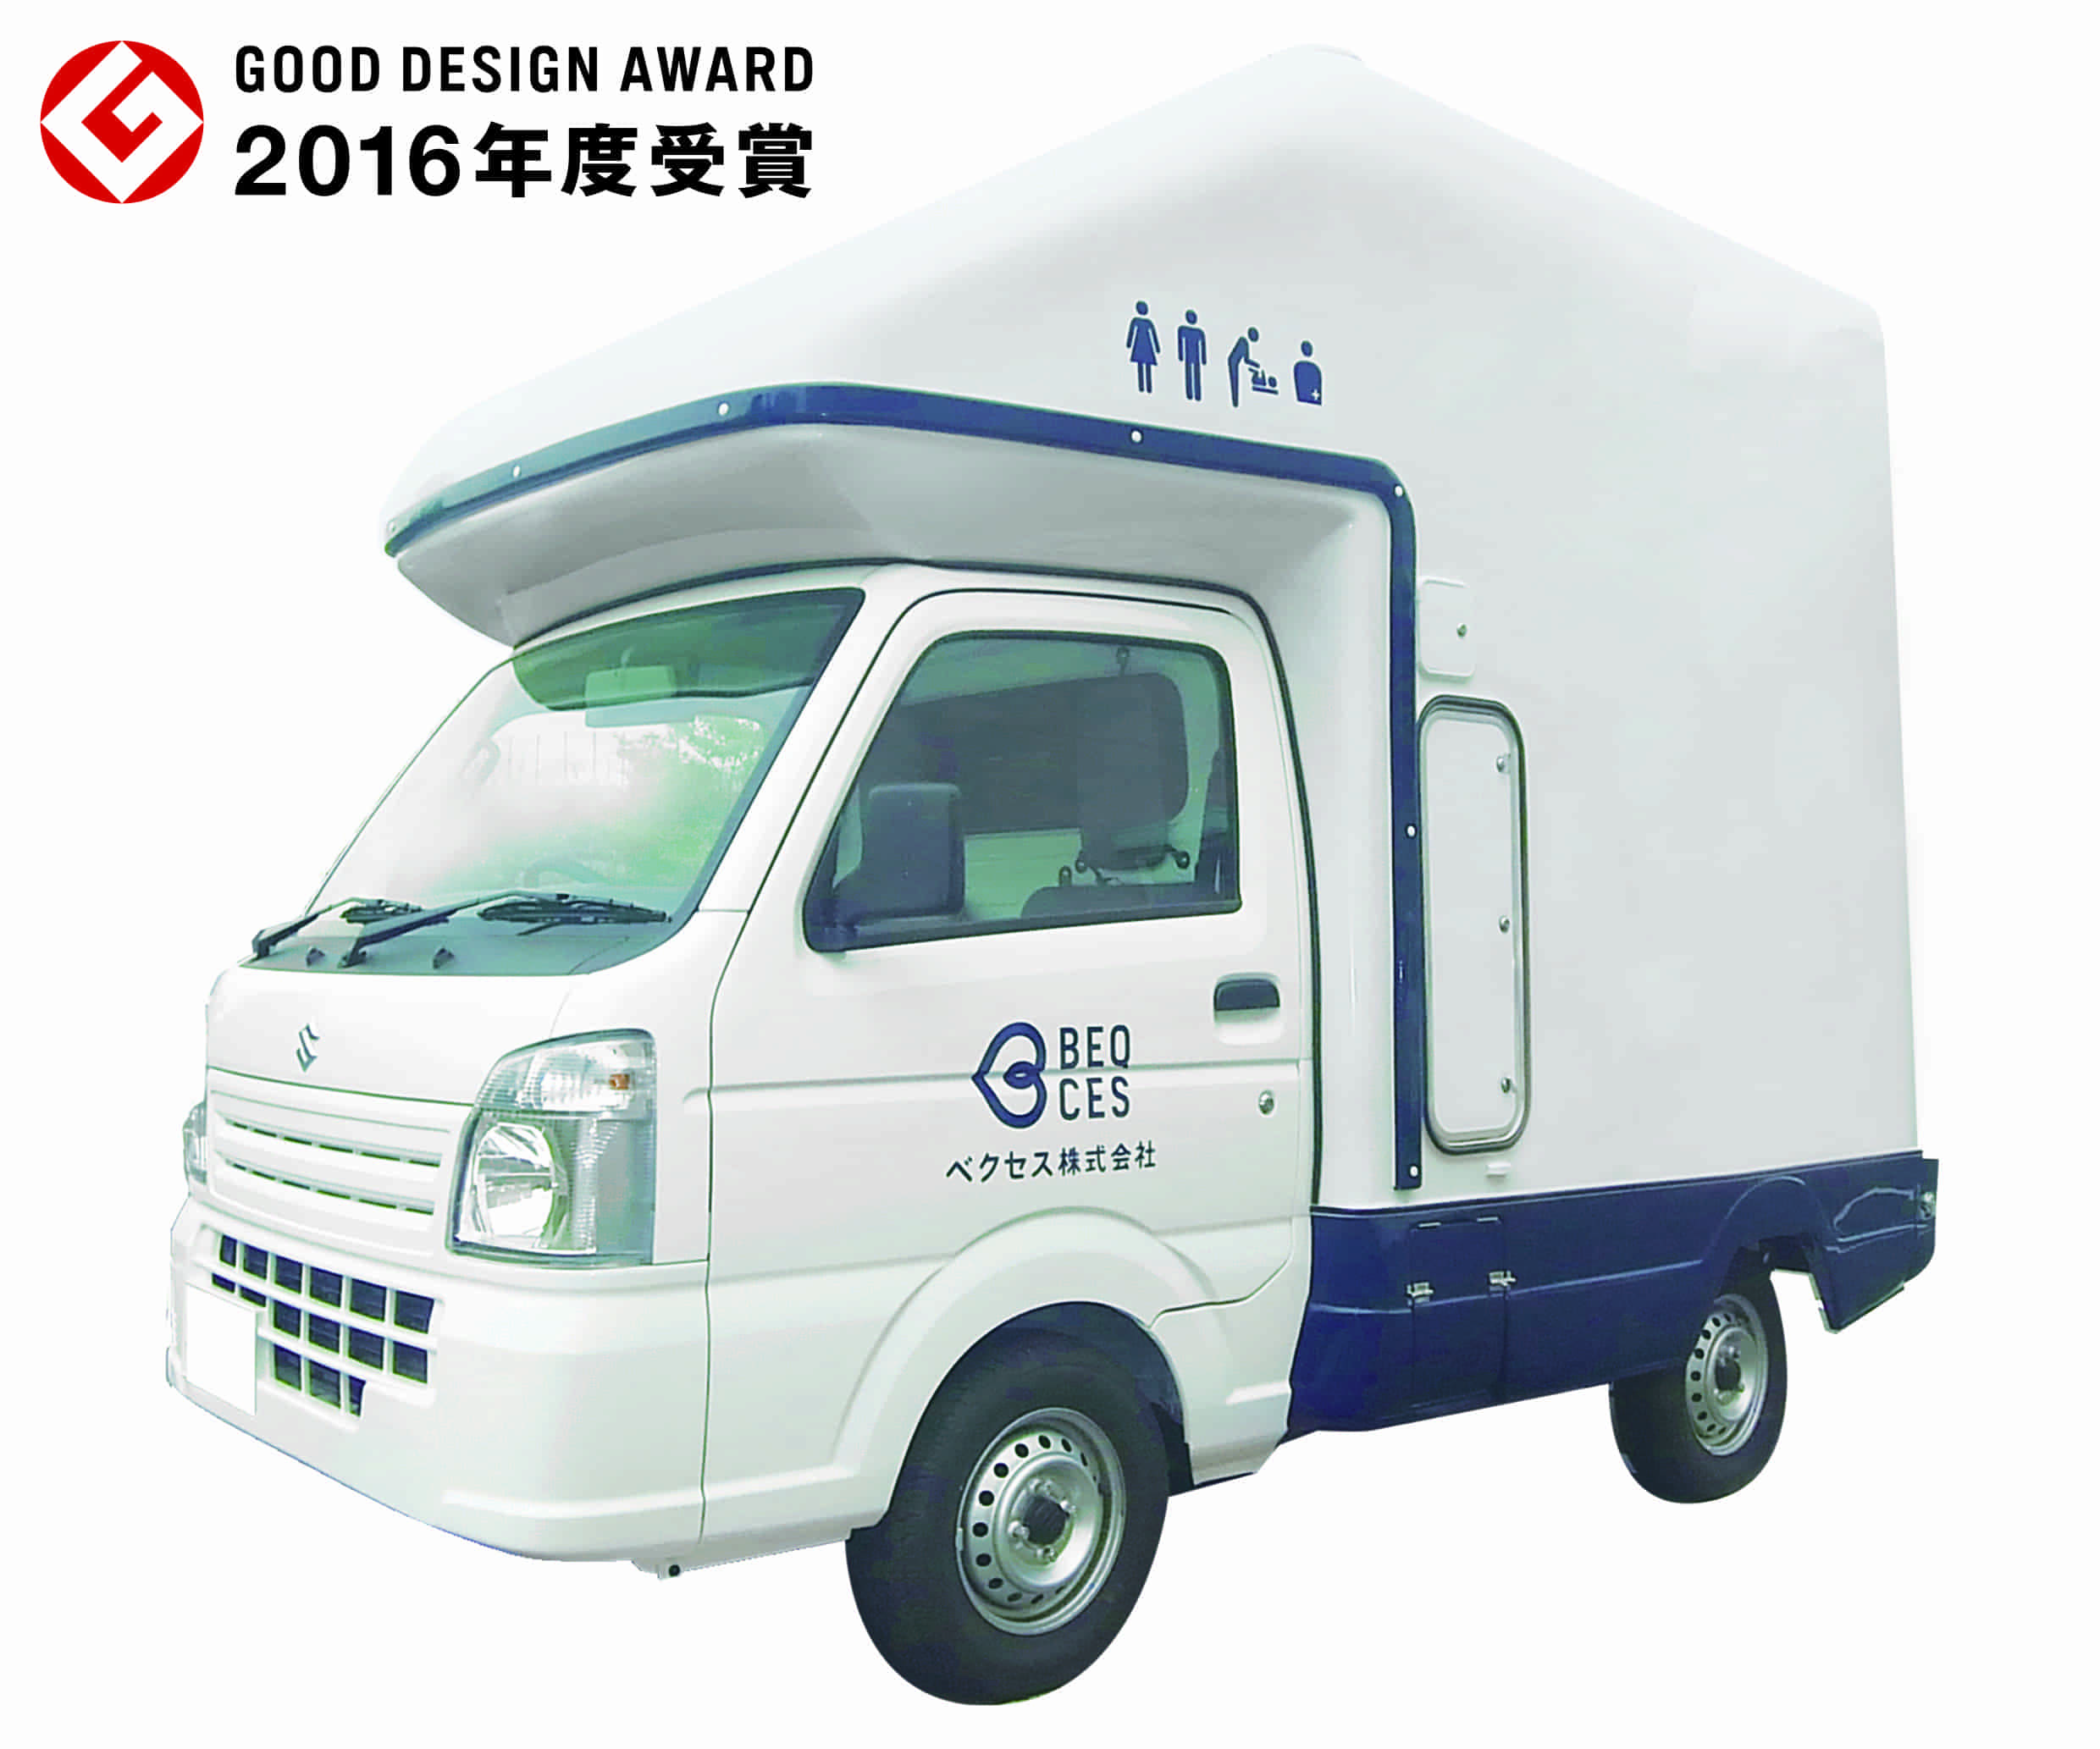 多目的トイレカーが「2016年度 グッドデザイン賞」を受賞 | ベクセス株式会社